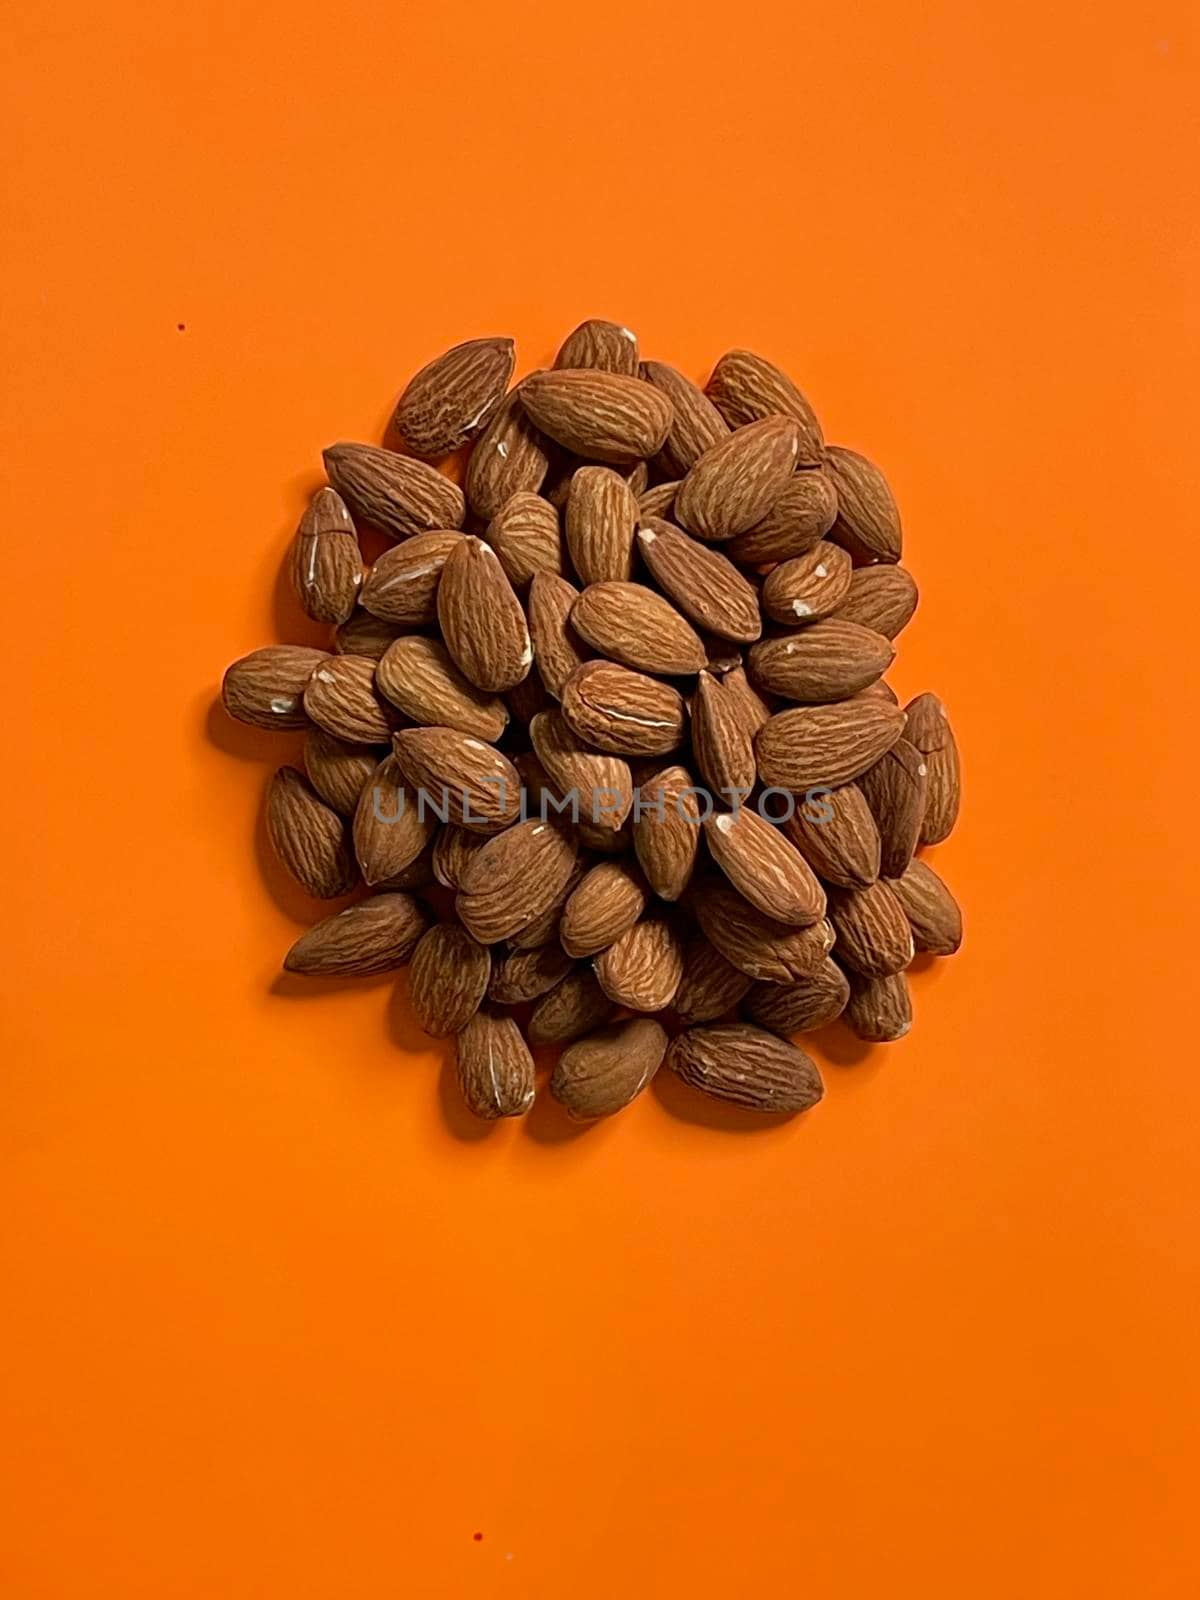 Peeled almond nuts on orange background